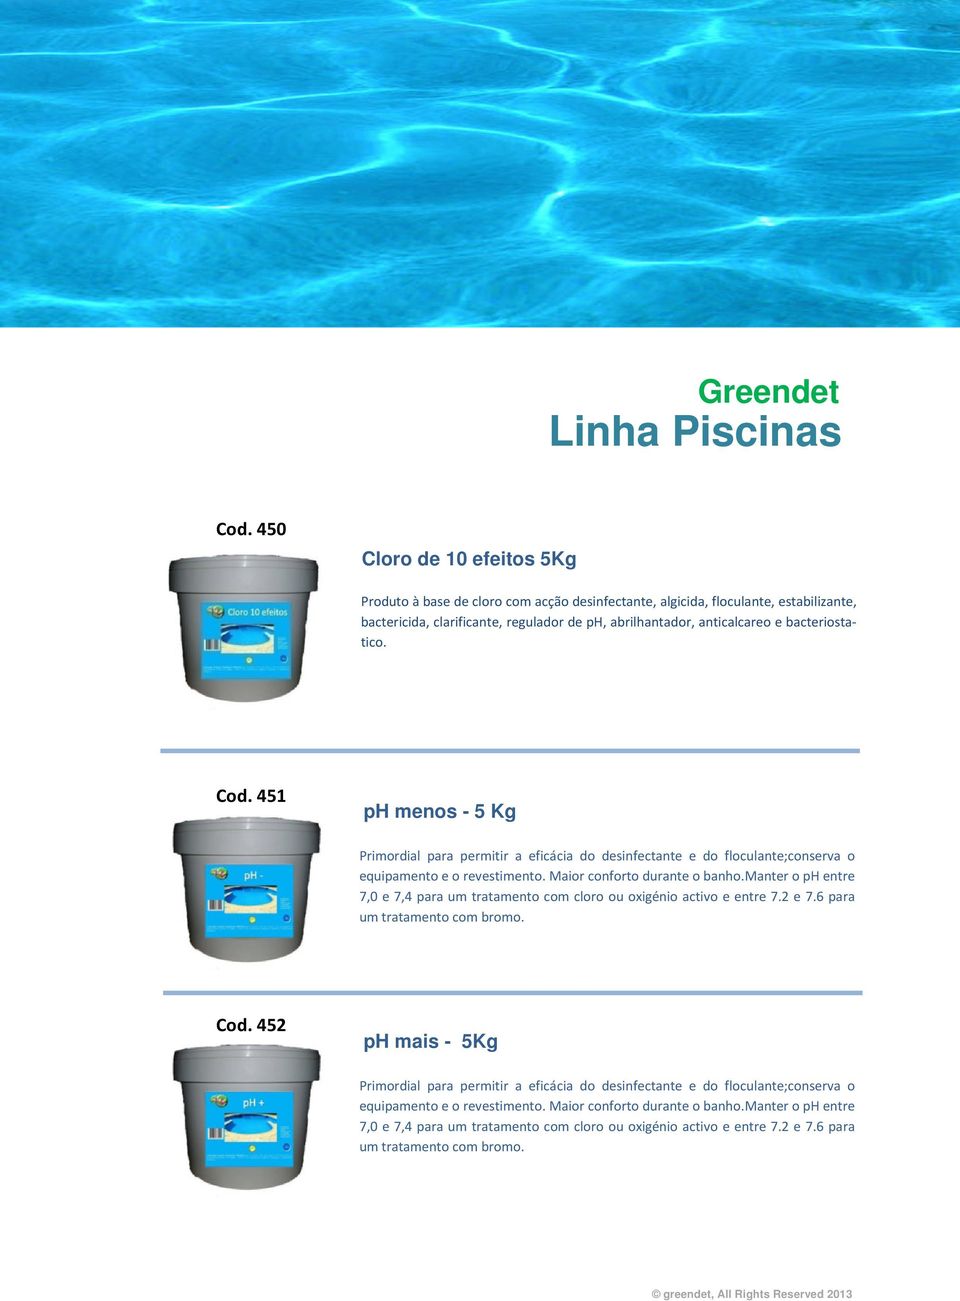 bacteriostatico. Cod. 451 ph menos - 5 Kg Primordial para permitir a eficácia do desinfectante e do floculante;conserva o equipamento e o revestimento. Maior conforto durante o banho.